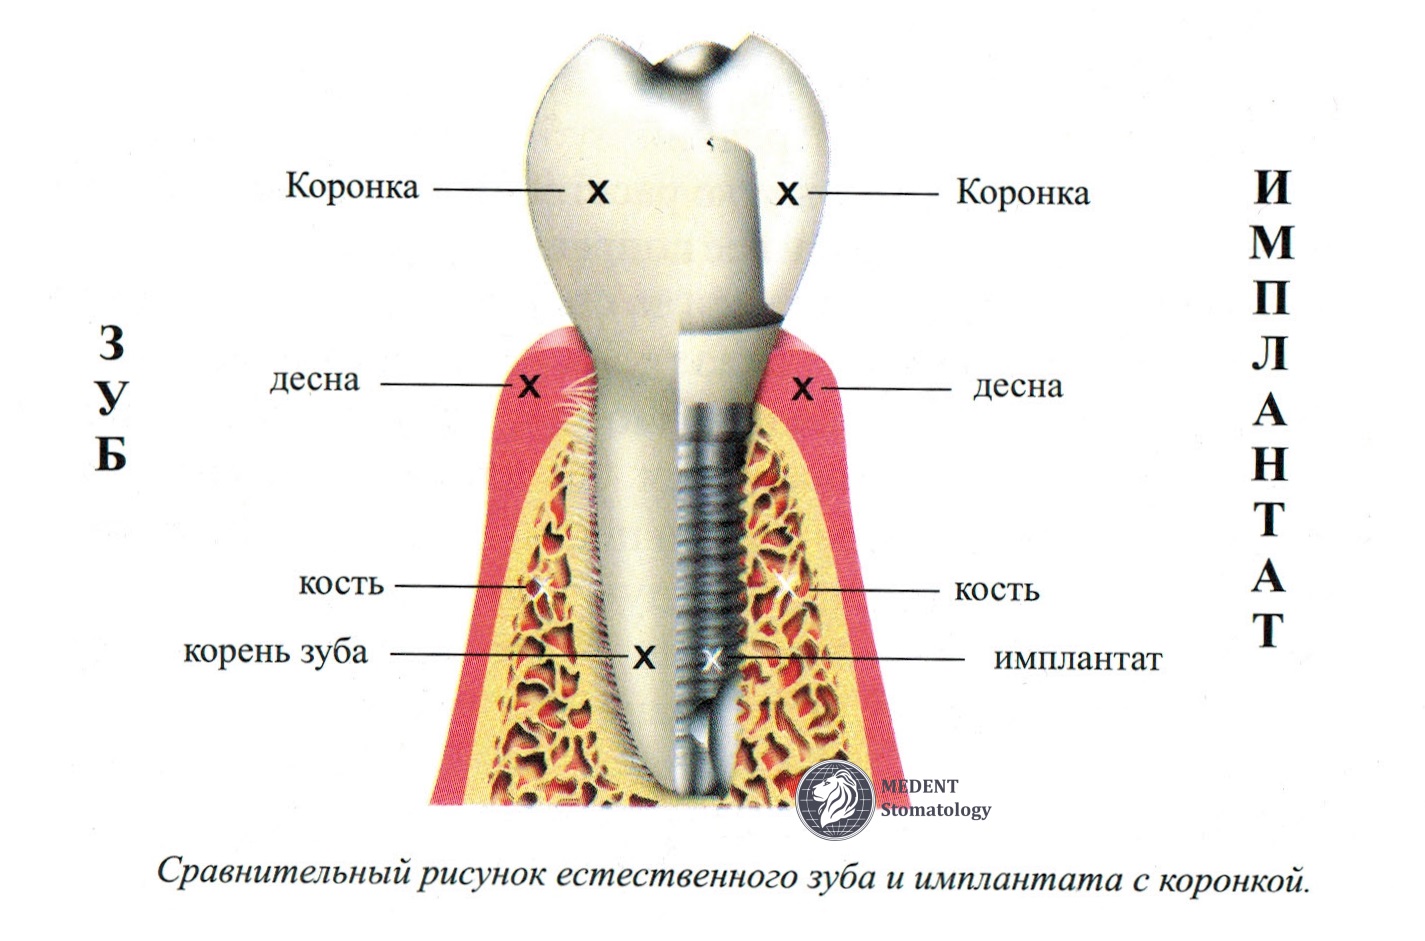 Сравнительный рисунок имплантата с коронкой и естественного зуба